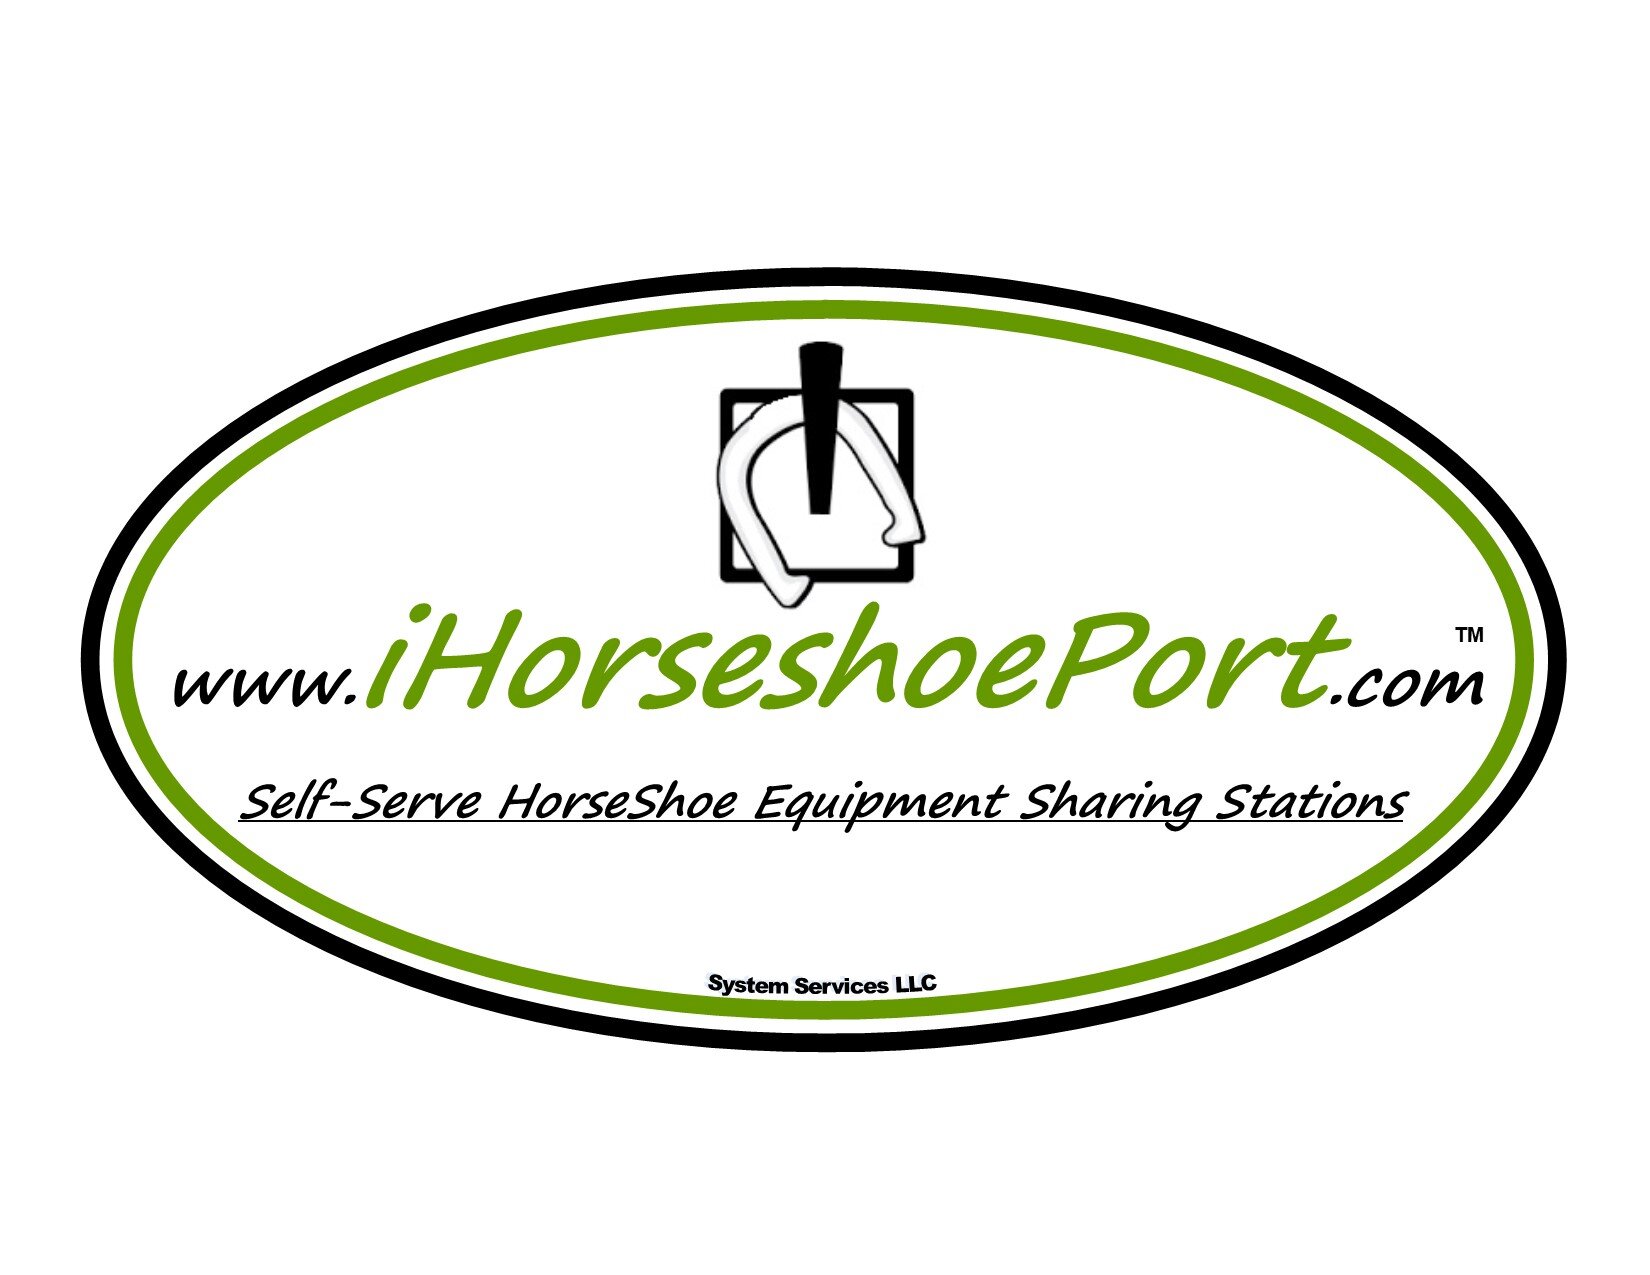 iHorseshoePort Logo.jpg